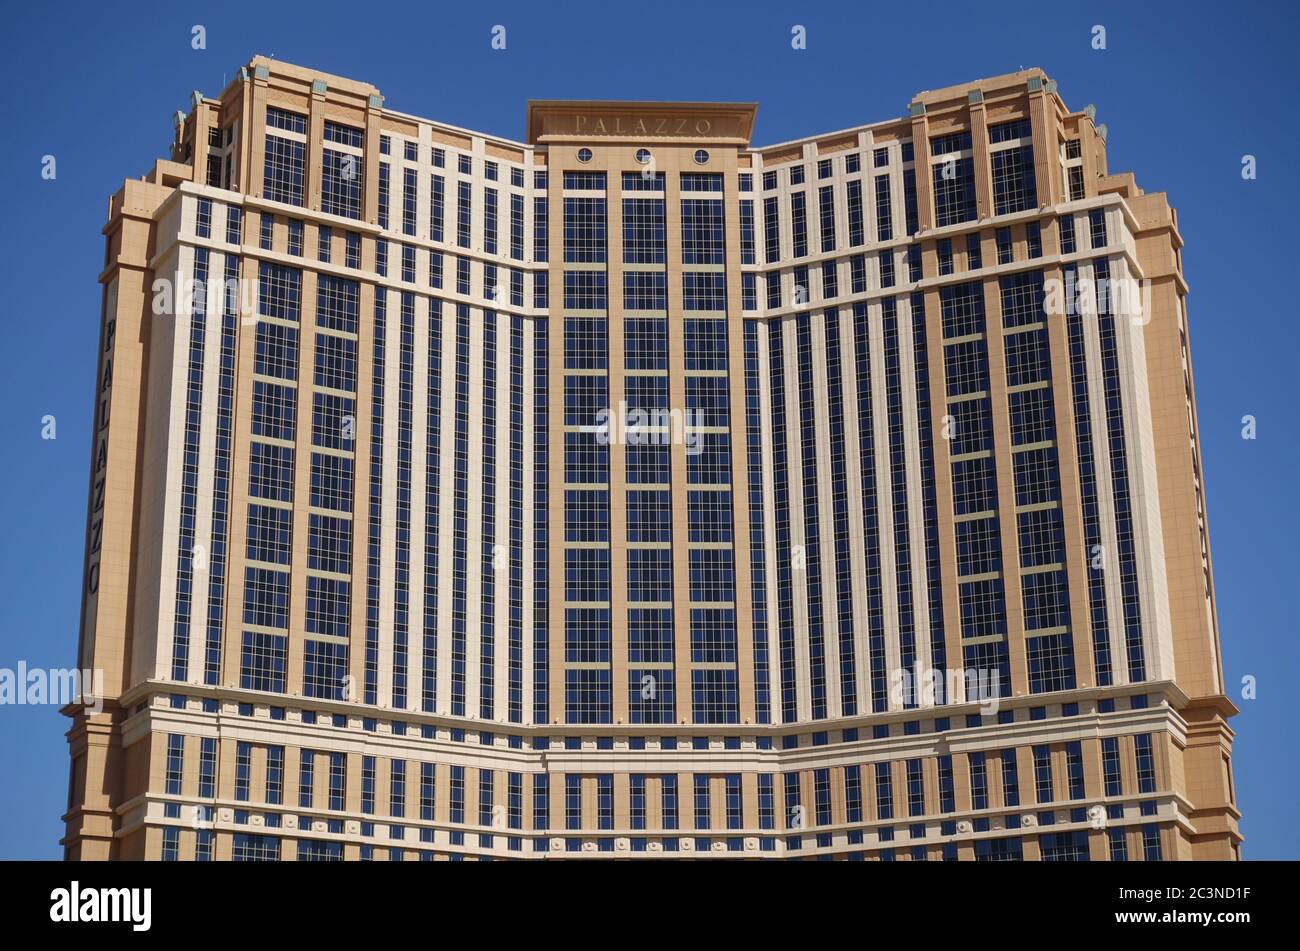 LAS VEGAS, NV - 6 JUN 2020 - Außenansicht des Palazzo im Venetian Hotel, einem Luxushotel und Kasino am Strip in der Innenstadt von Las Vega Stockfoto